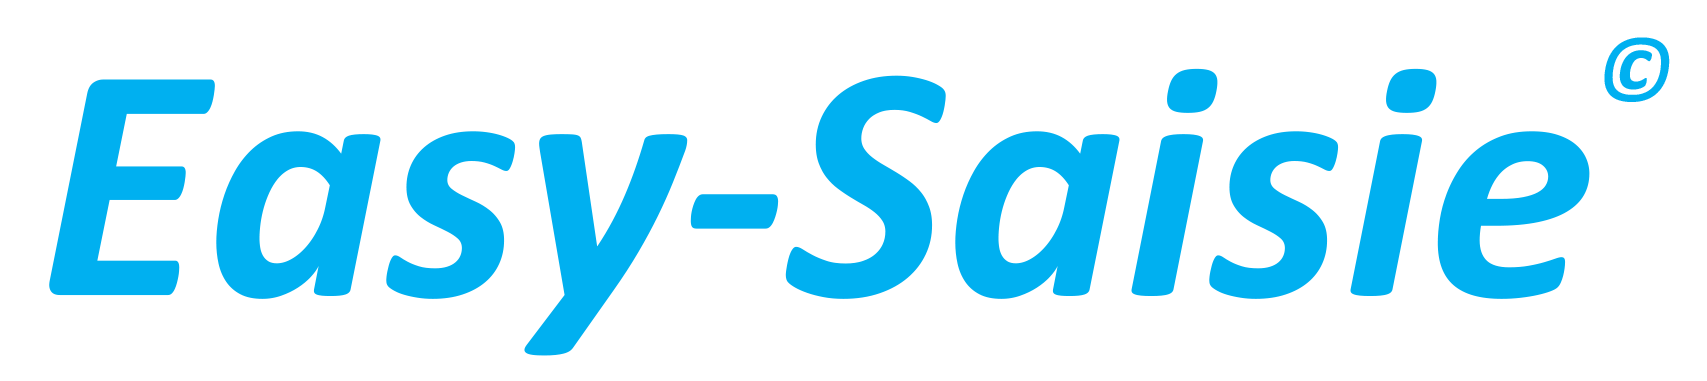 easysaisie logo